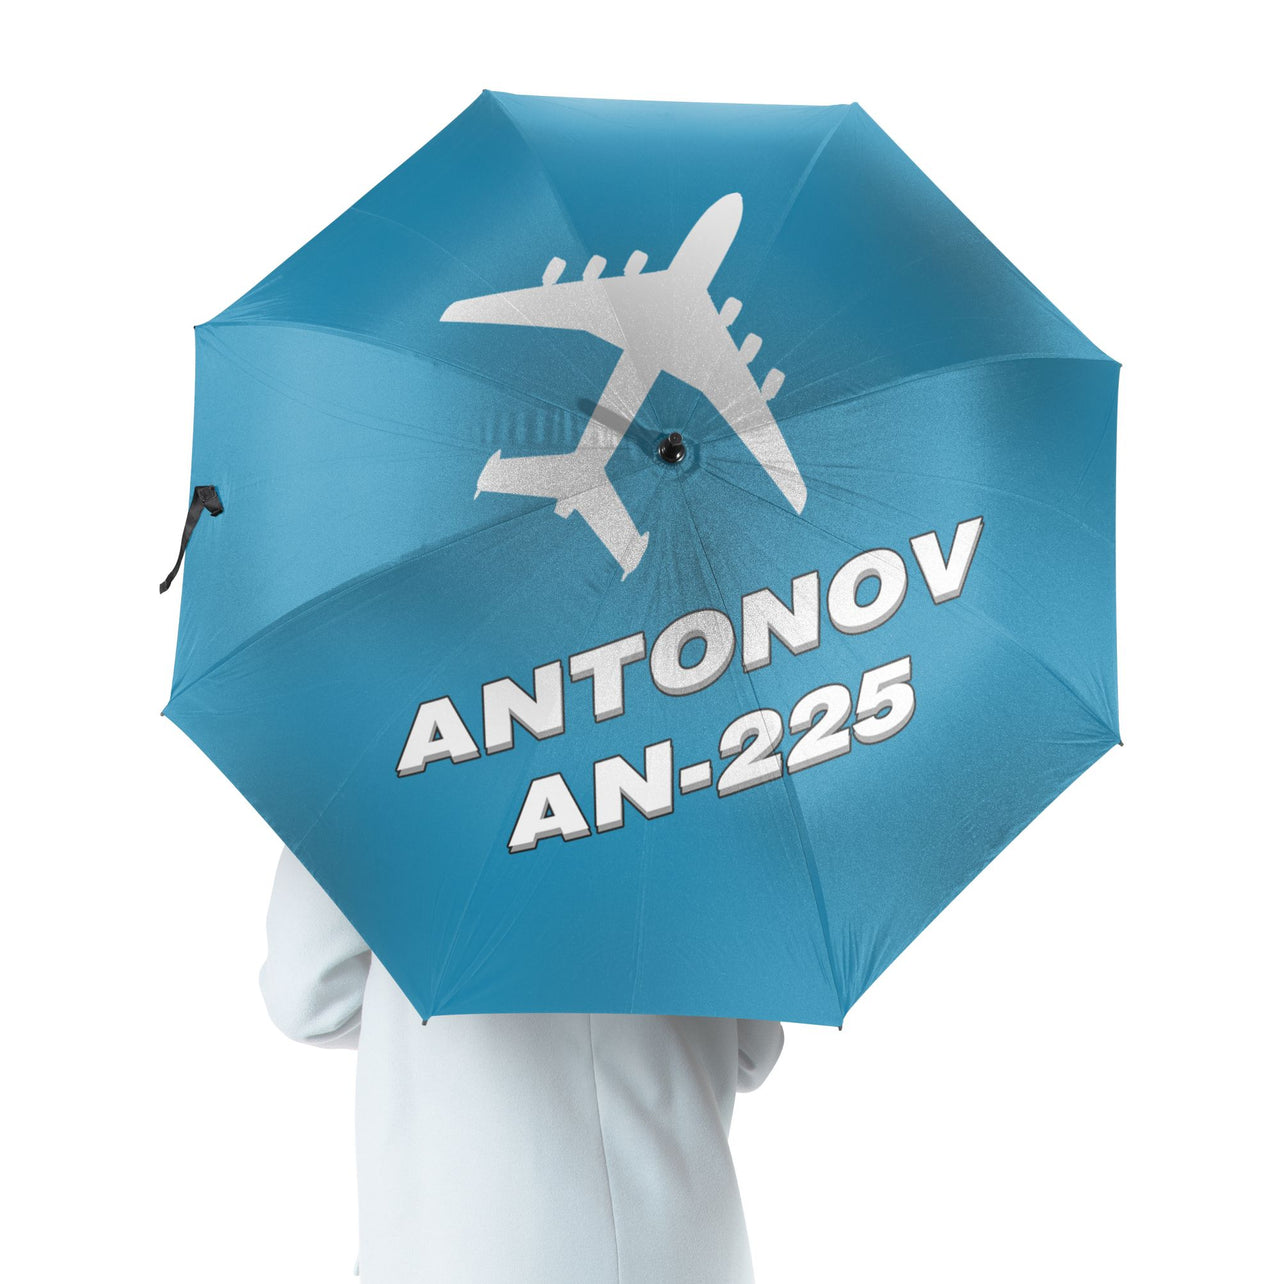 Antonov AN-225 (28) Designed Umbrella